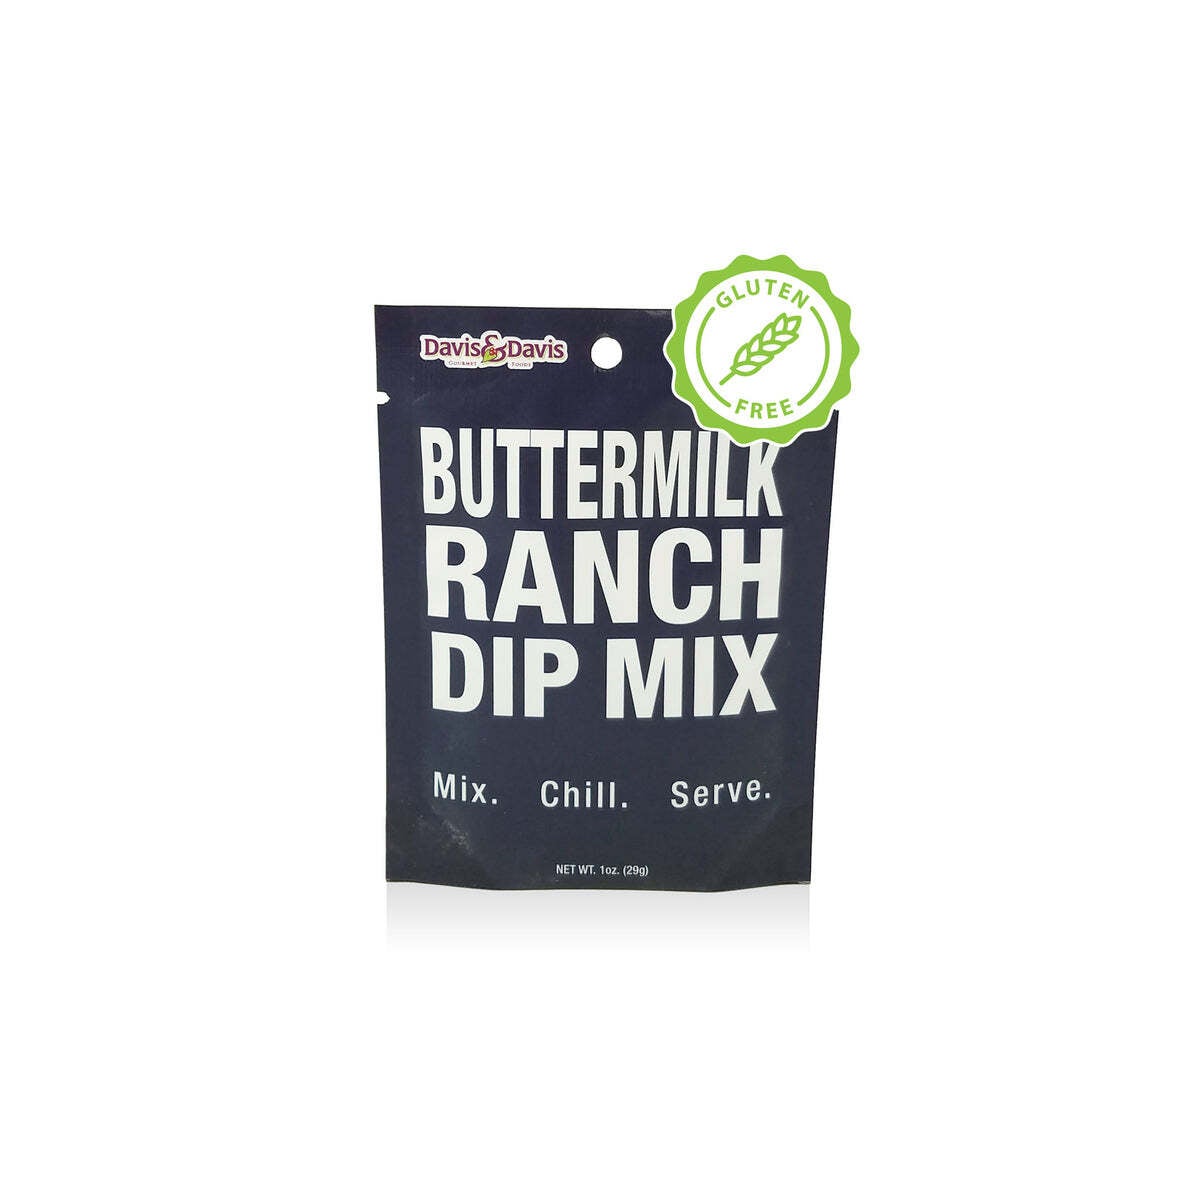 Dip Mix - Buttermilk Ranch